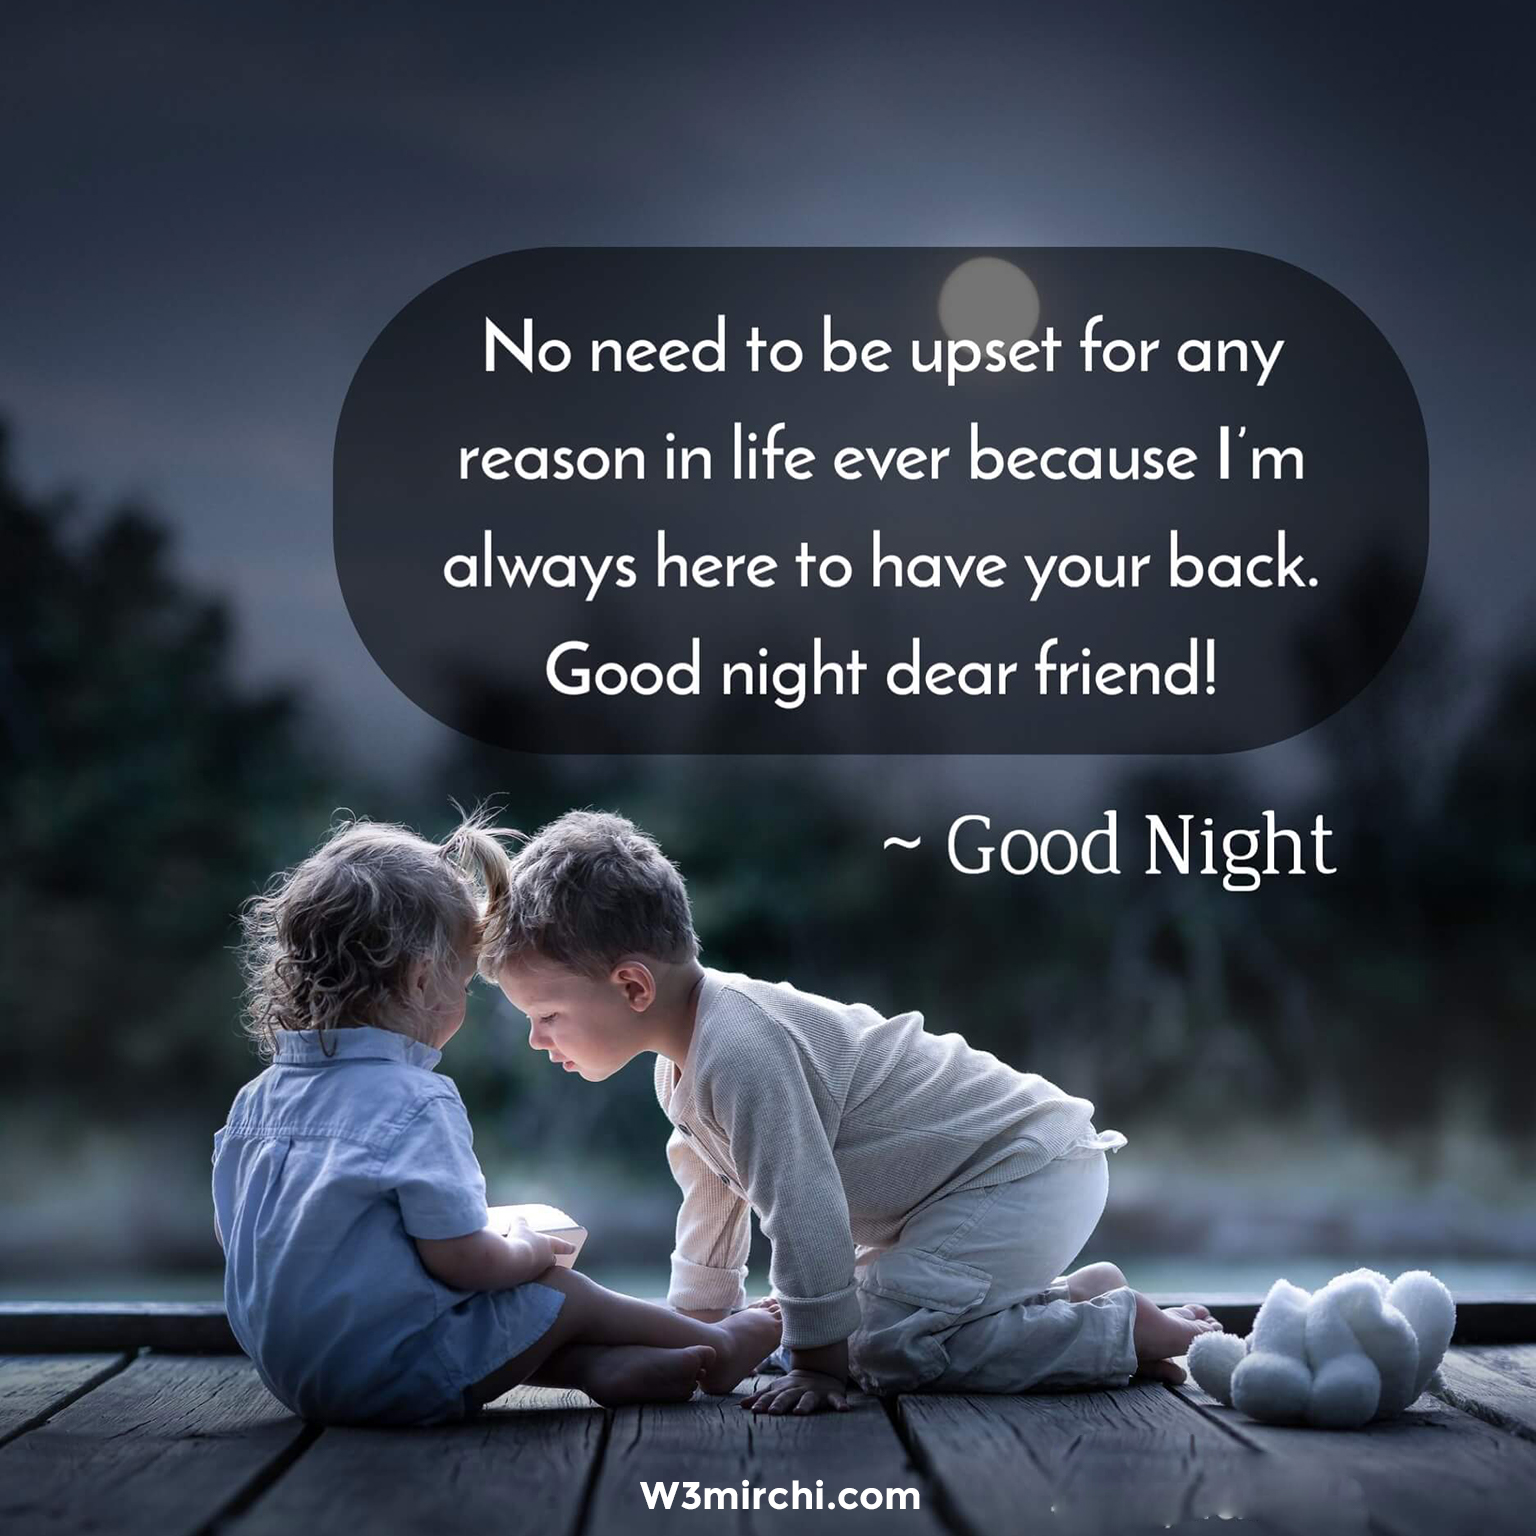 Good night dear friend!